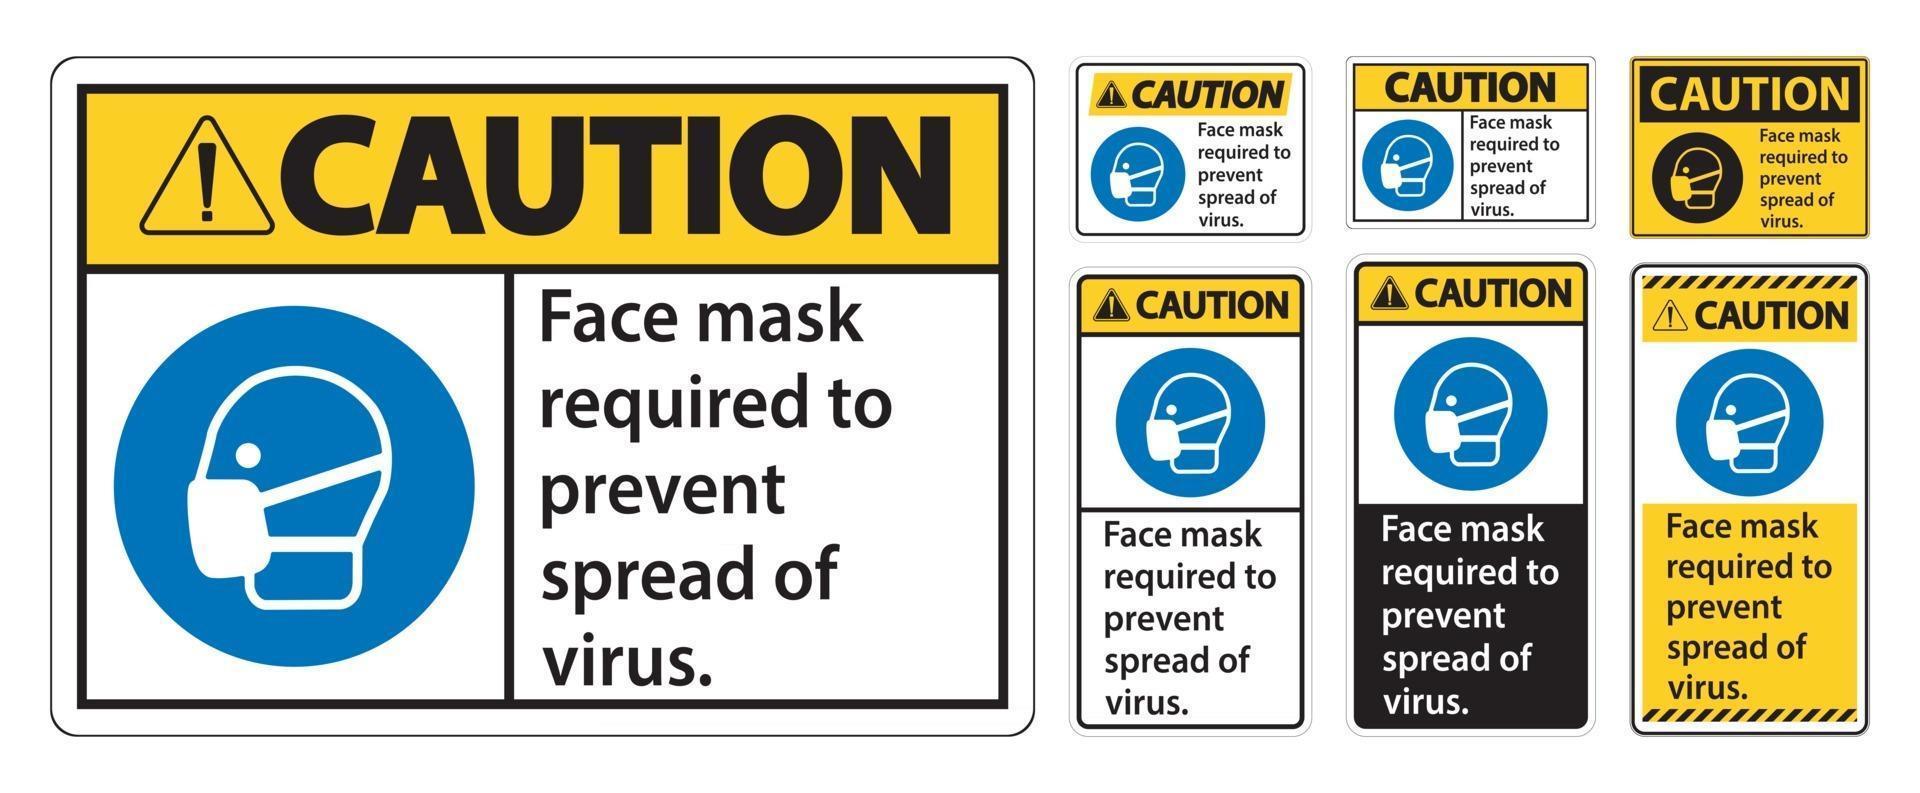 Precaución mascarilla necesaria para evitar la propagación del virus signo sobre fondo blanco. vector